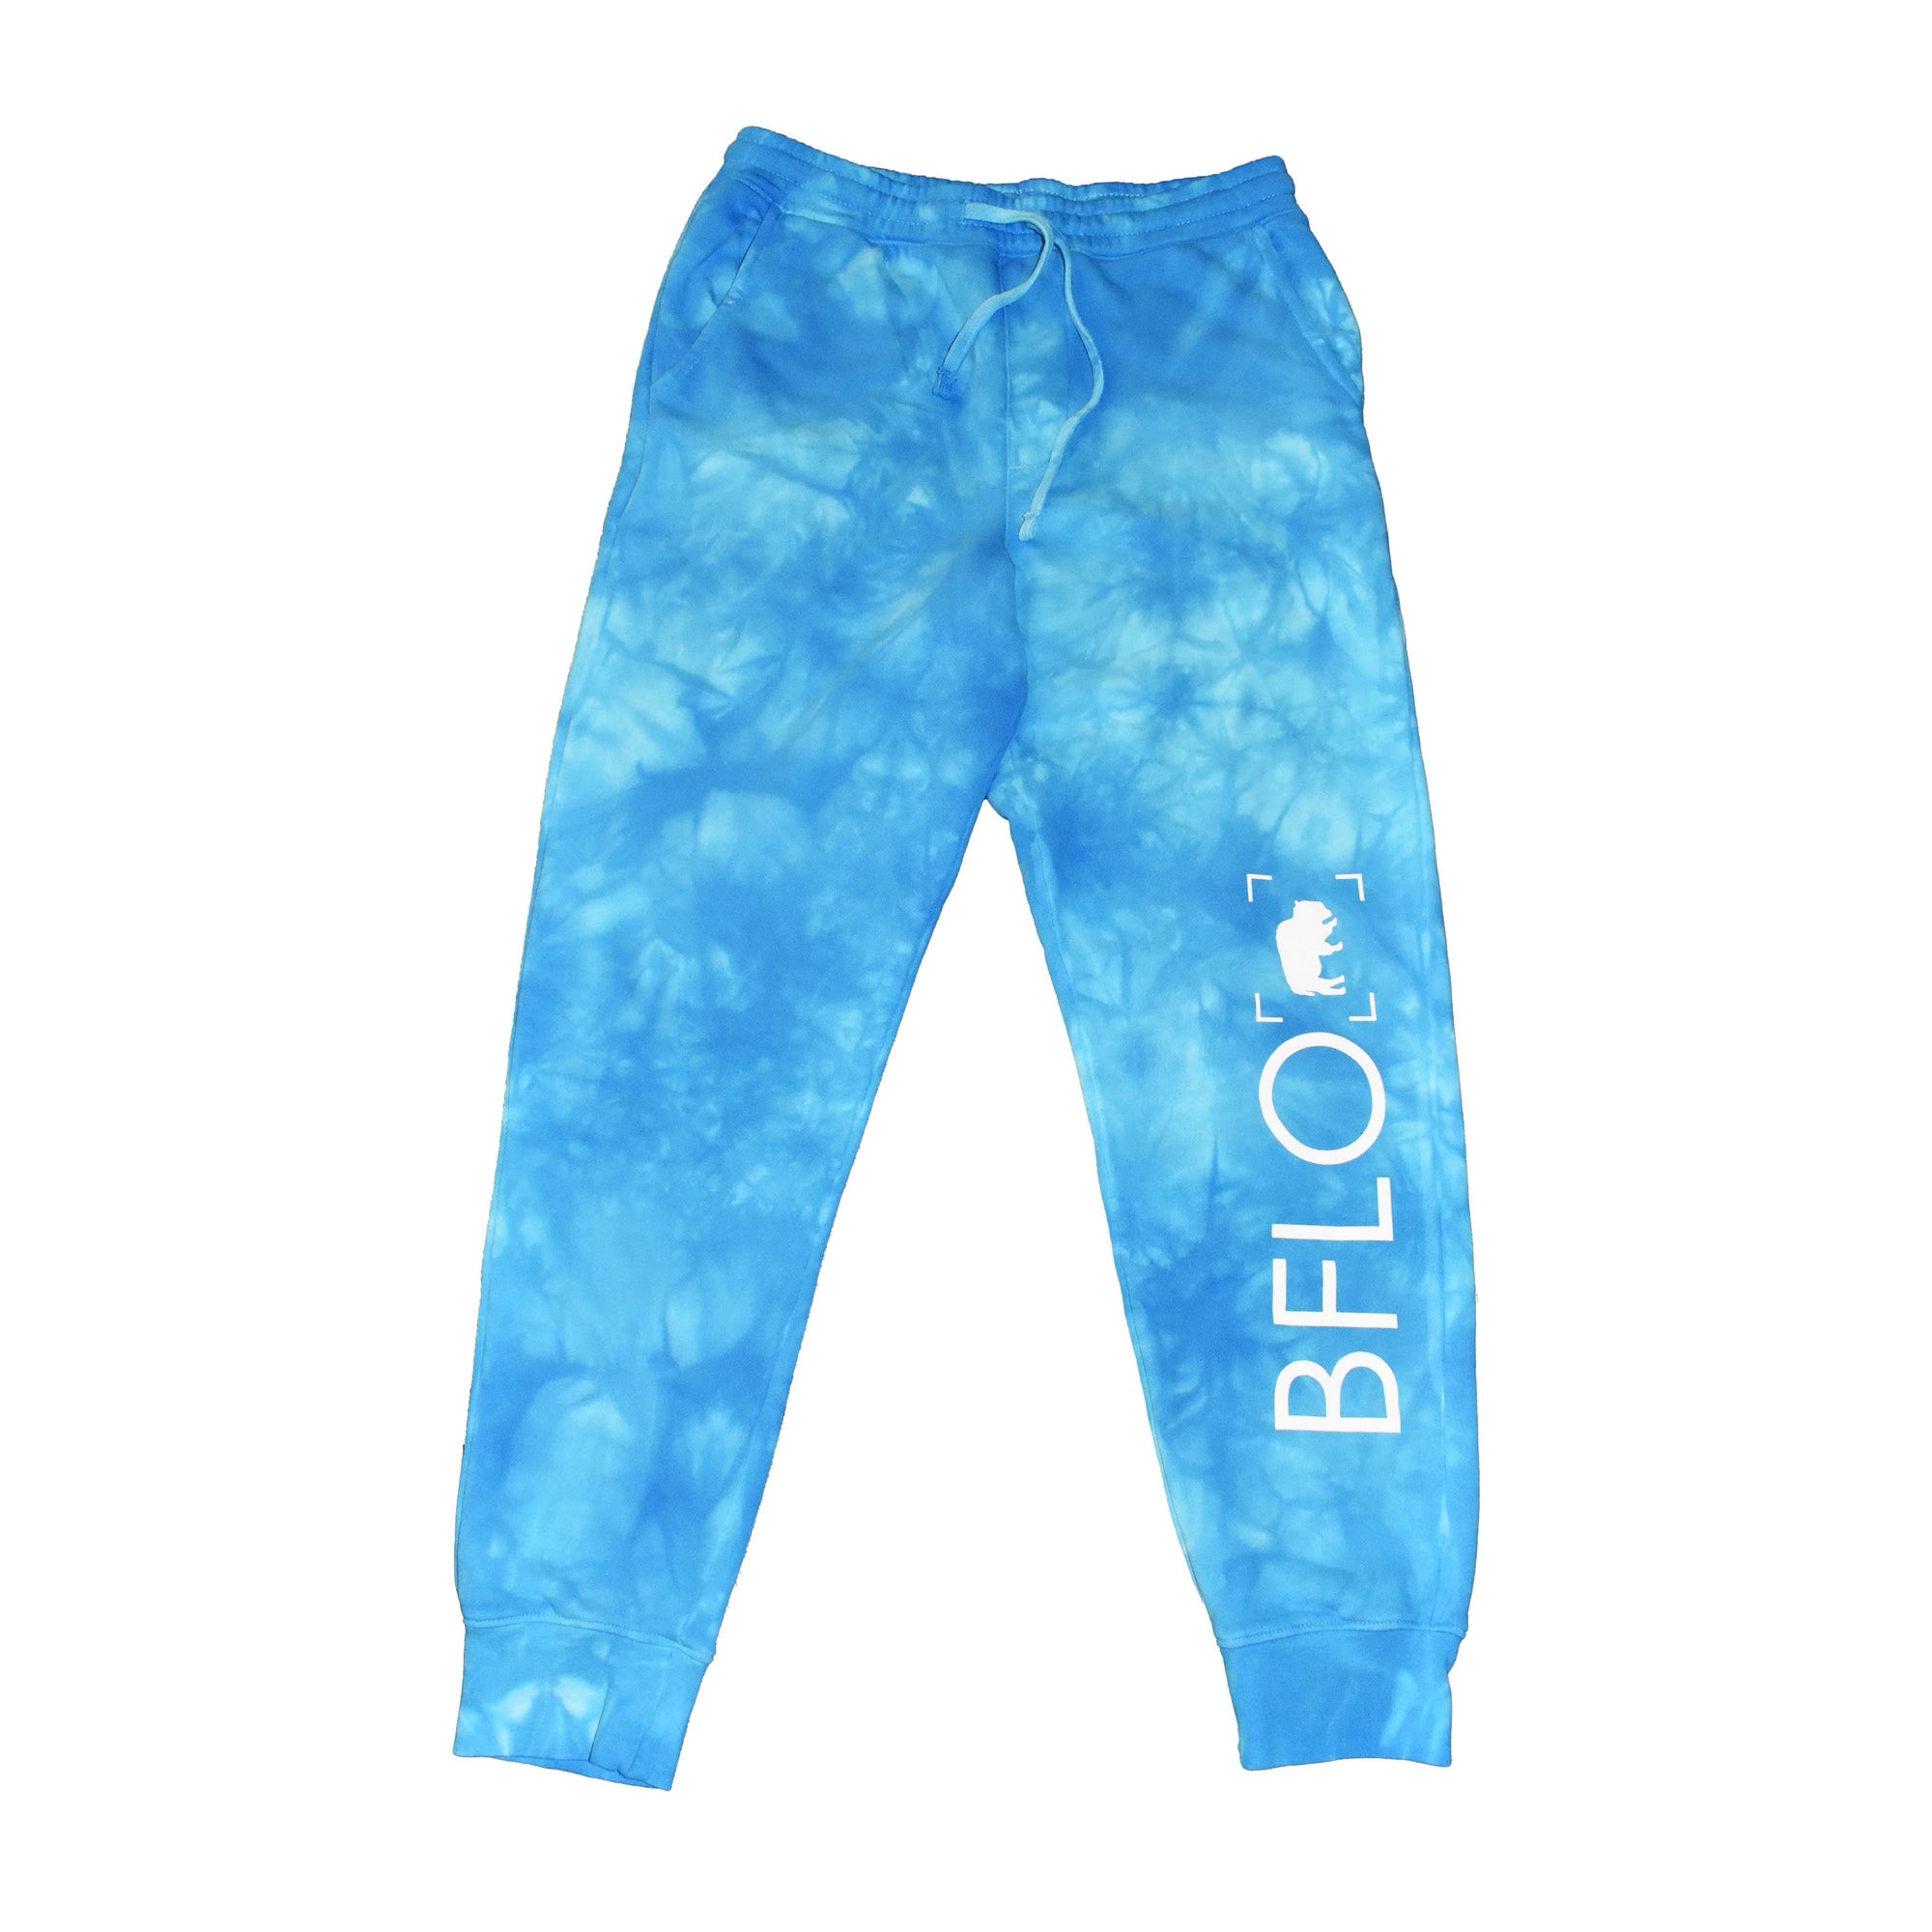 BFLO Aqua Tie Dye Blue Sweatpants